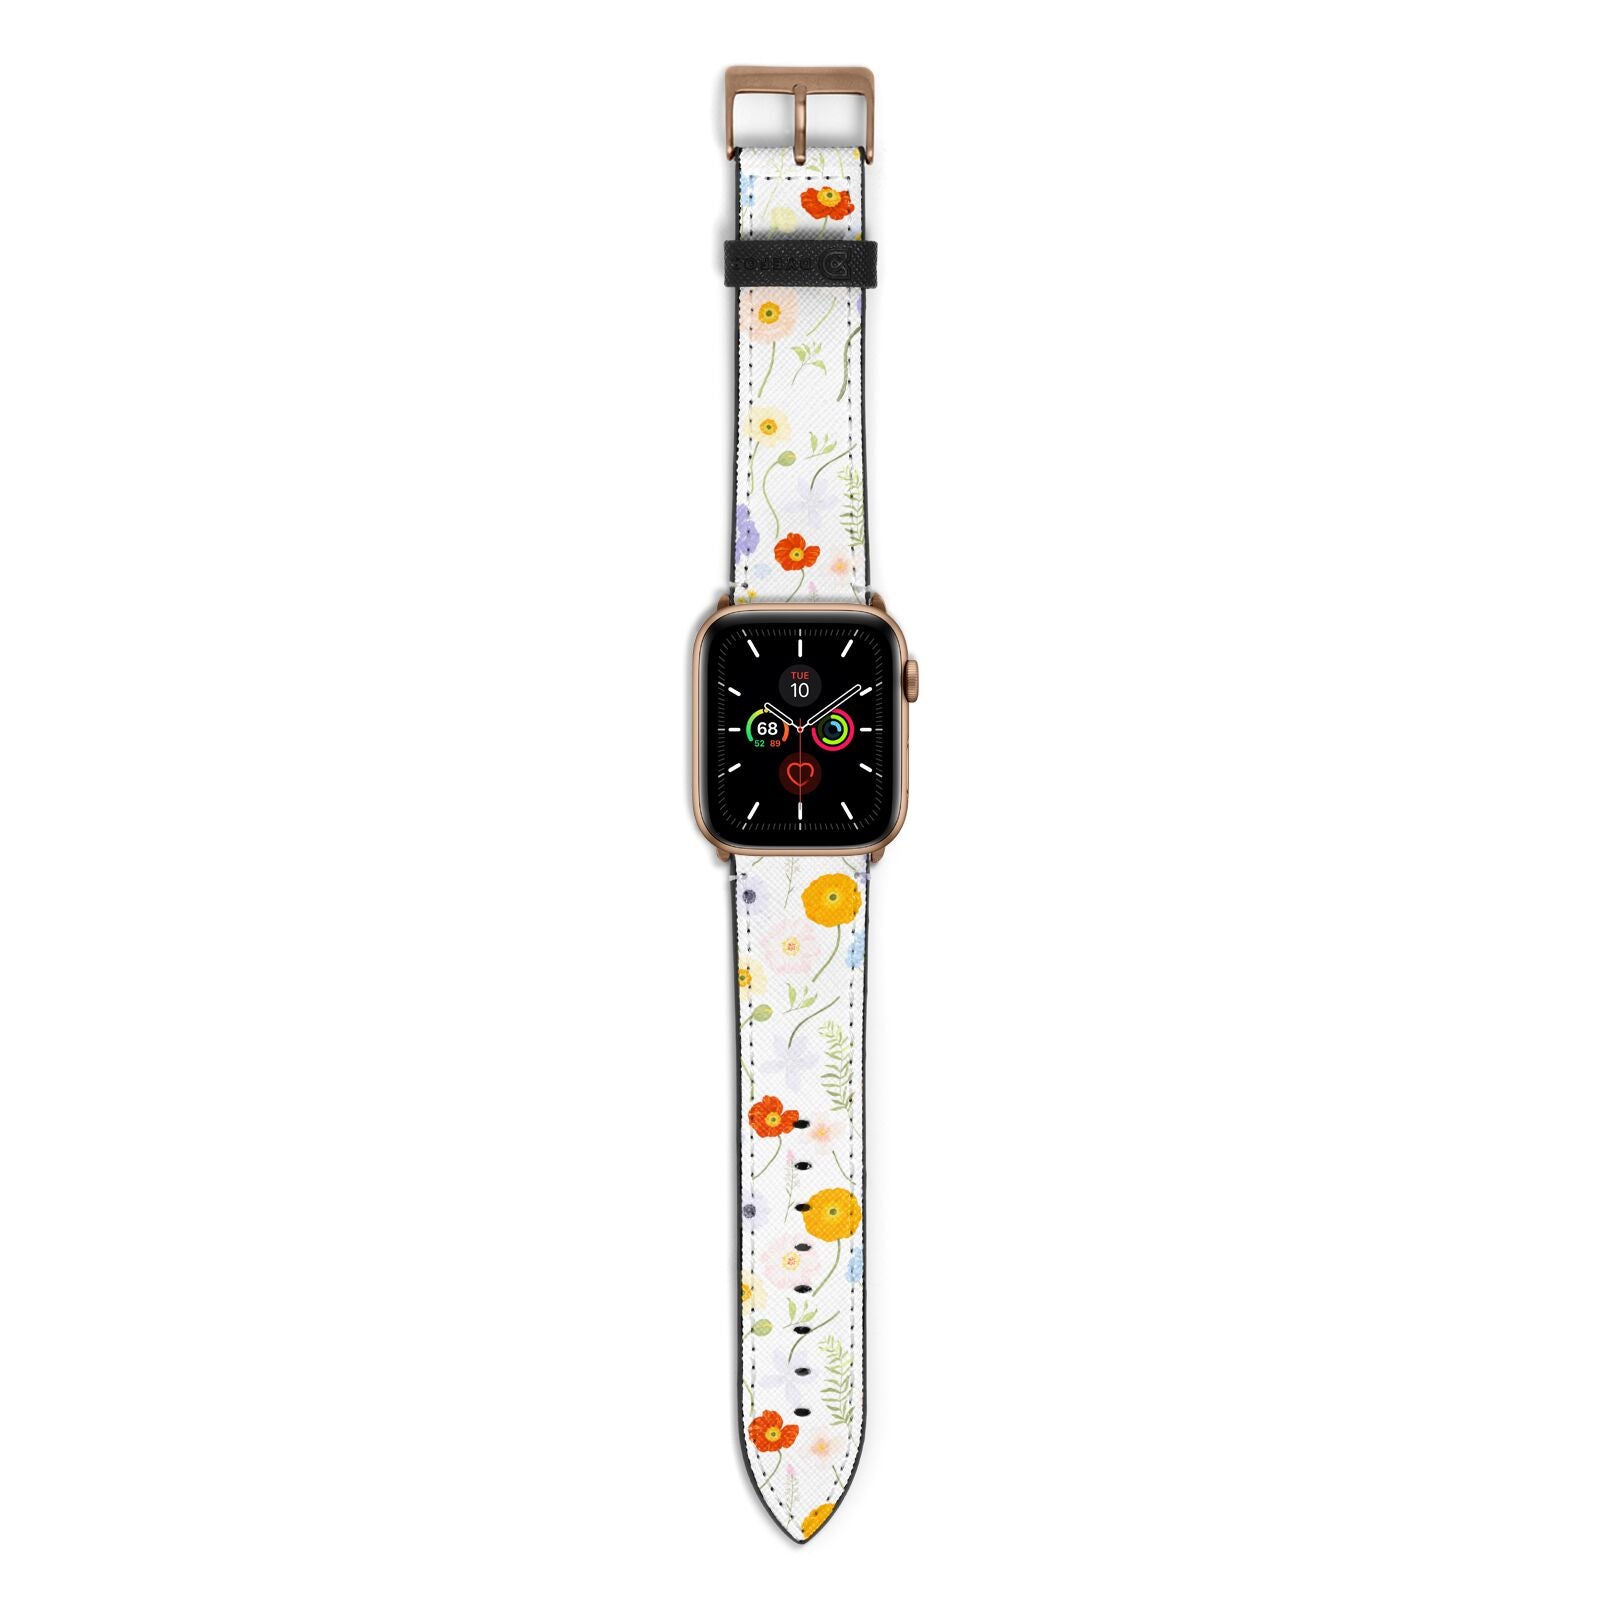 Wild Flower Apple Watch Strap with Gold Hardware